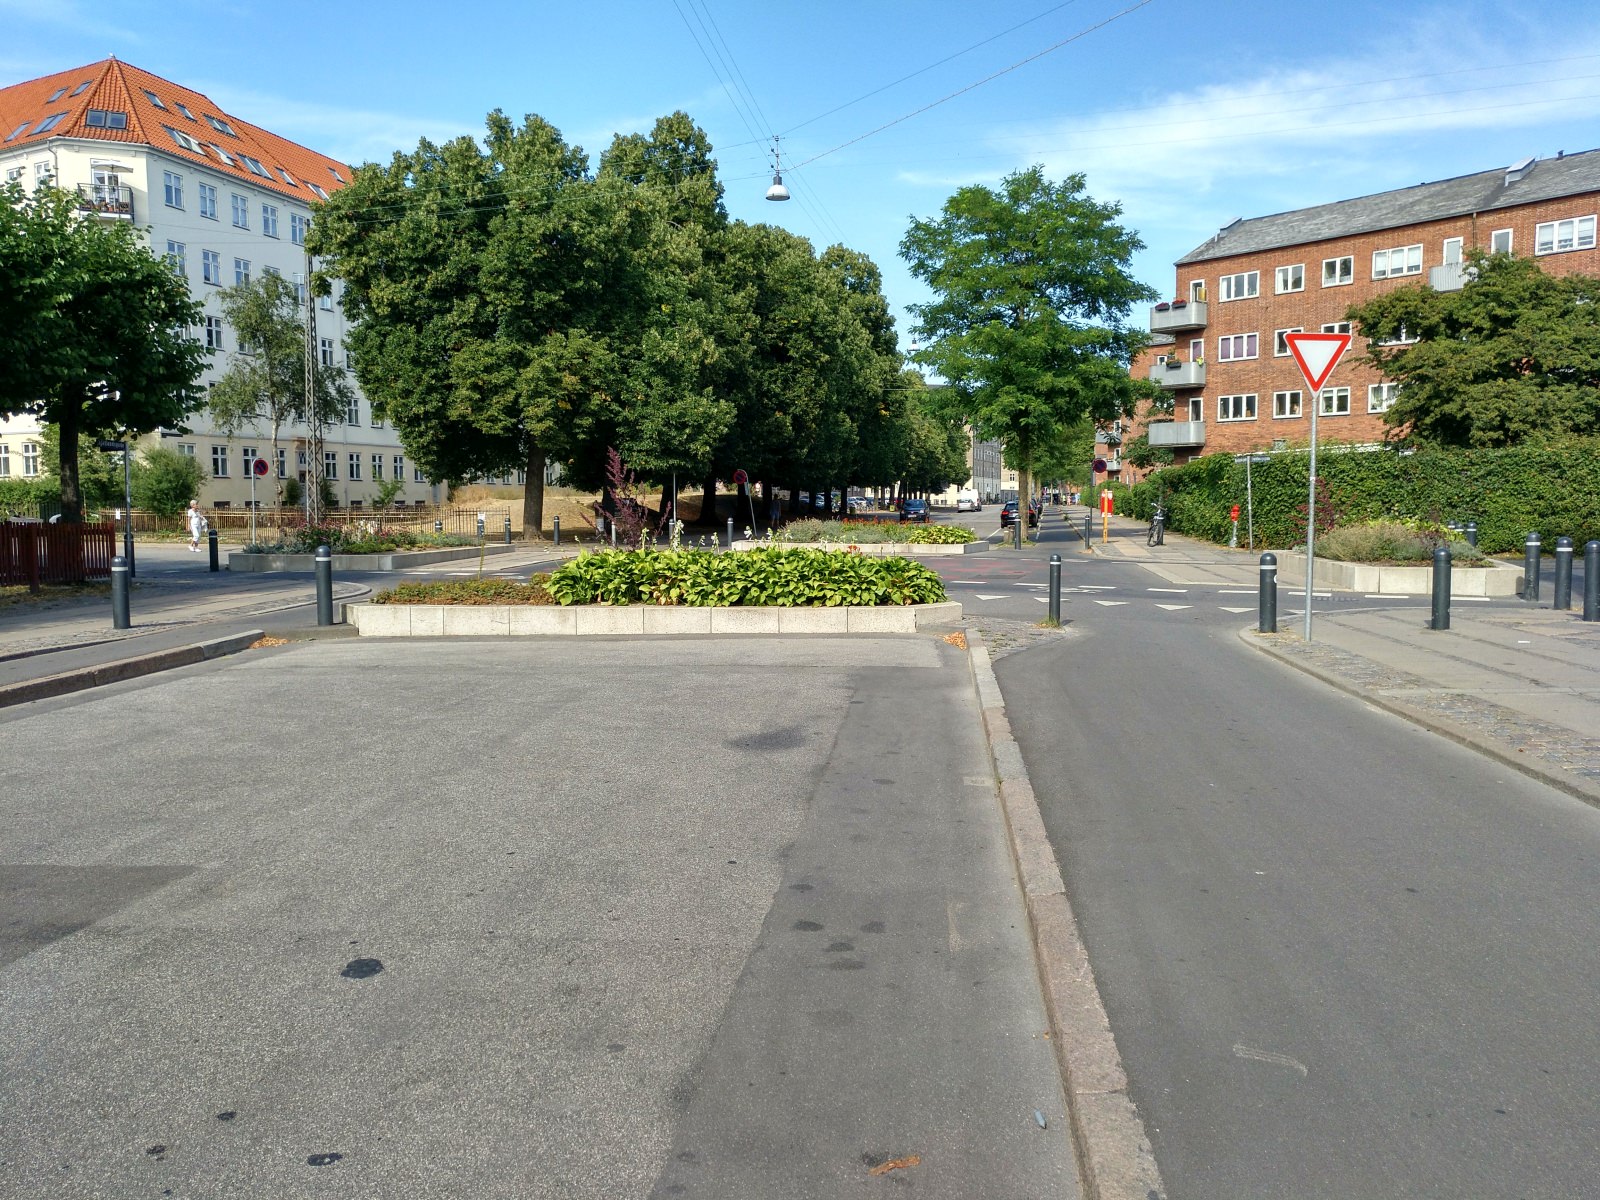 Kopenhagen Vermeidung Durchgangsverkehr bei gleichzeitiger Durchlässigkeit für den Radverkehr und Fußverkehr